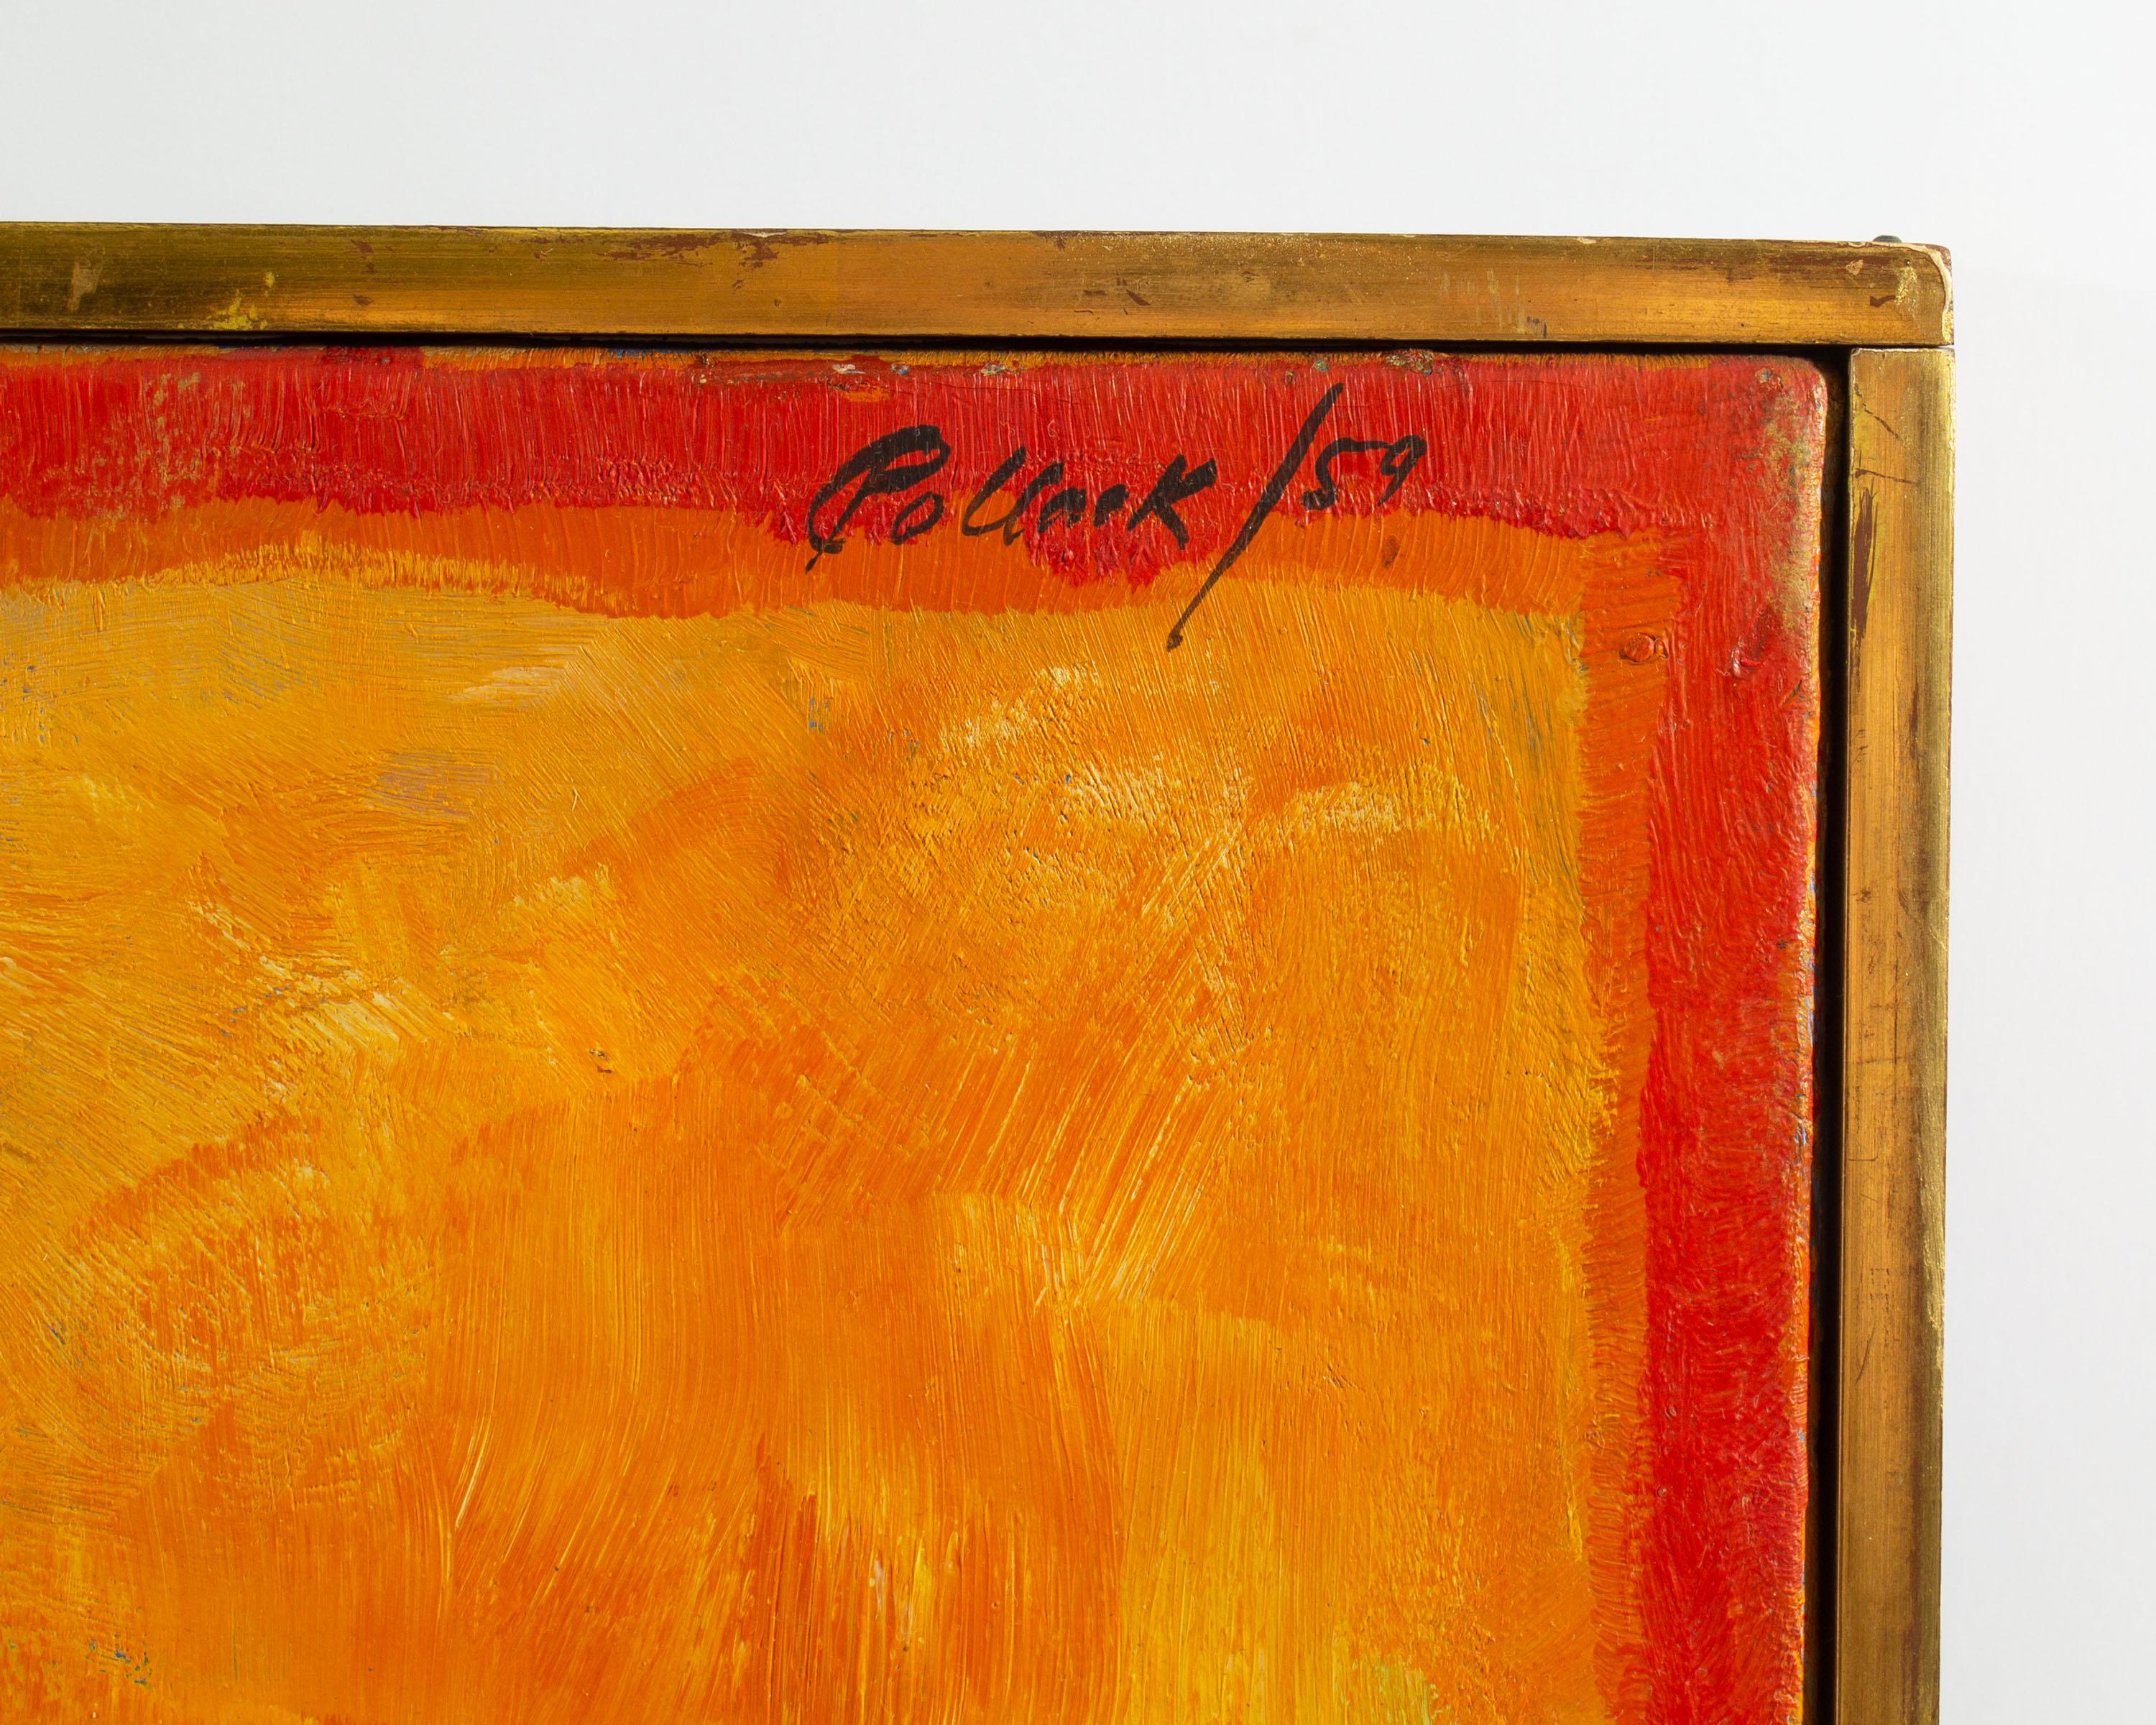 Ein signiertes abstraktes Gemälde in Öl auf Leinwand des amerikanischen Künstlers Reginald Murray Pollack (1924-2001). Das 1959 datierte Gemälde zeigt eine abstrakte Innenraumszene mit Gemälden und bunten Tischdekorationen. Ein leuchtendes, tiefes